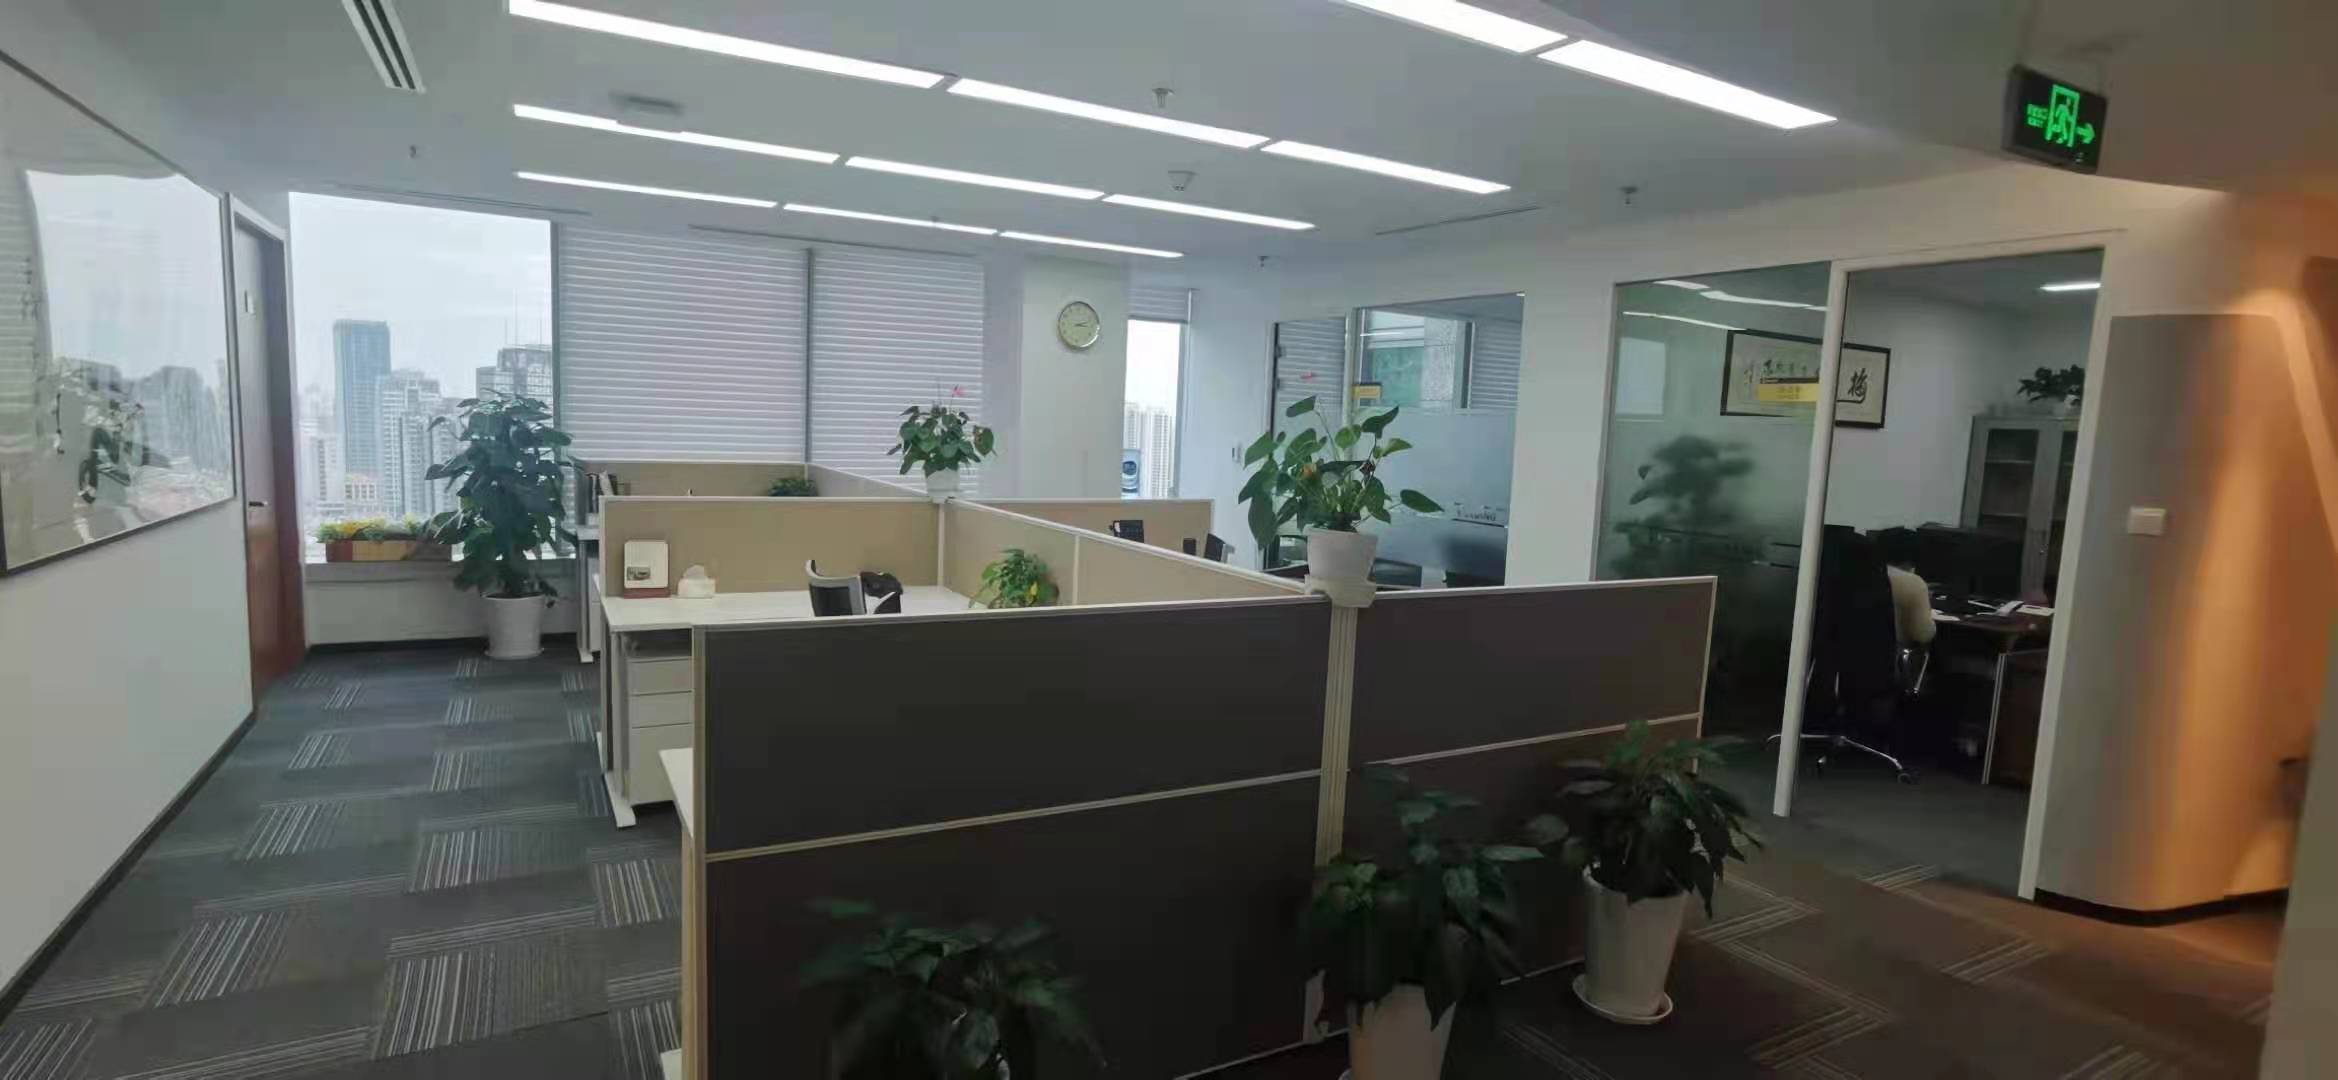 浦东大道720号国际航运金融大厦出租298平办公室有装修无家具